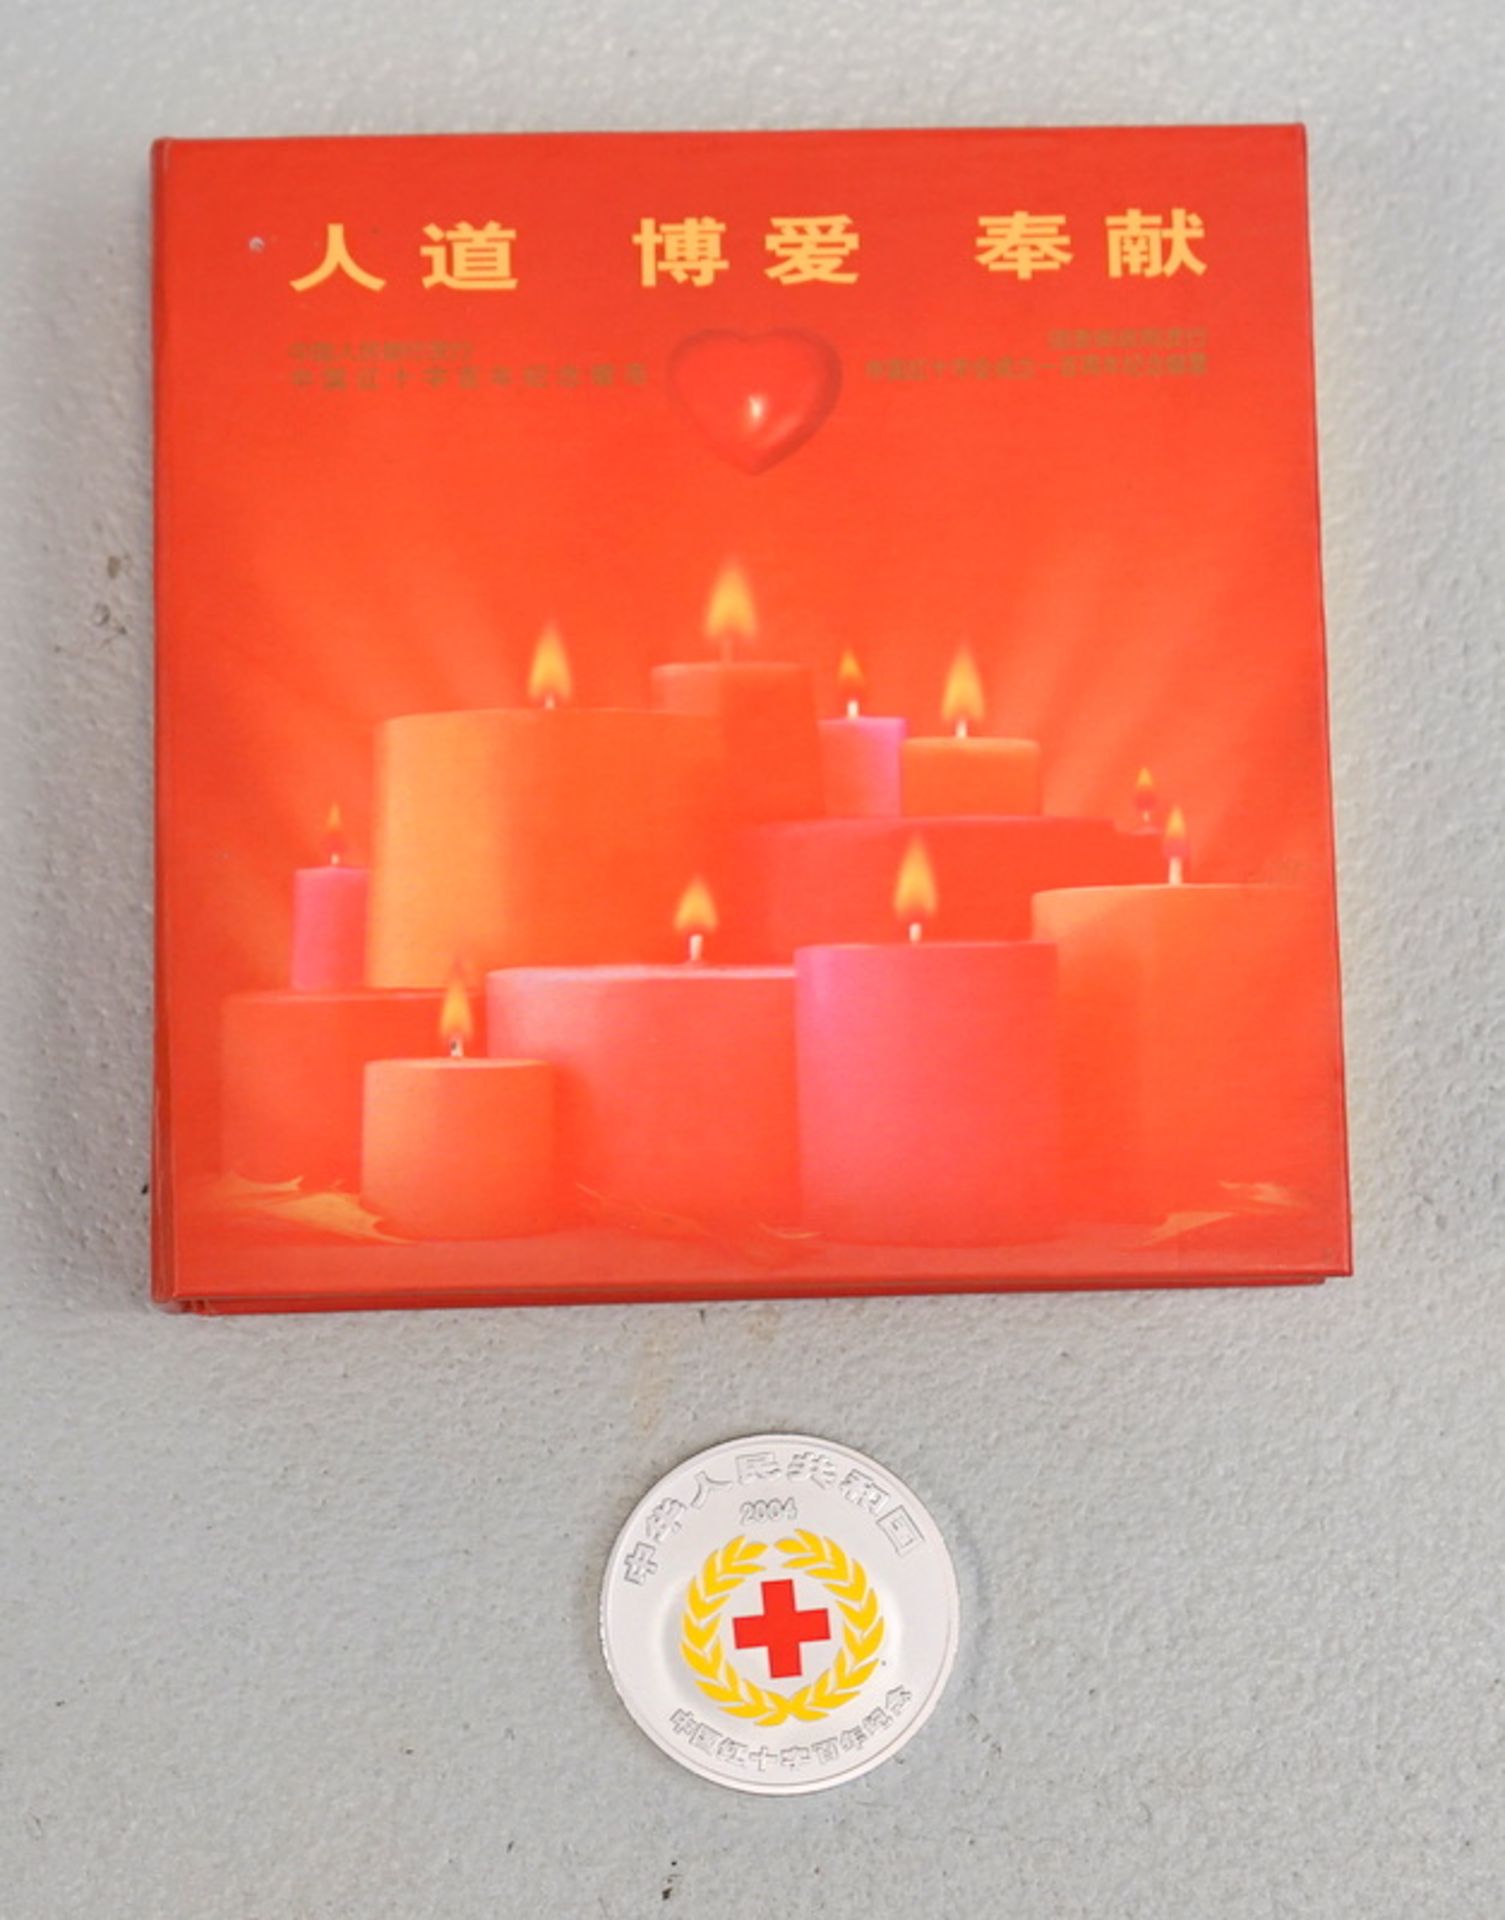 China 10 Yuan Farbmünze anläßlich des 100-jährigen Bestehens der Rote Kreuz Gesellschaft in China,